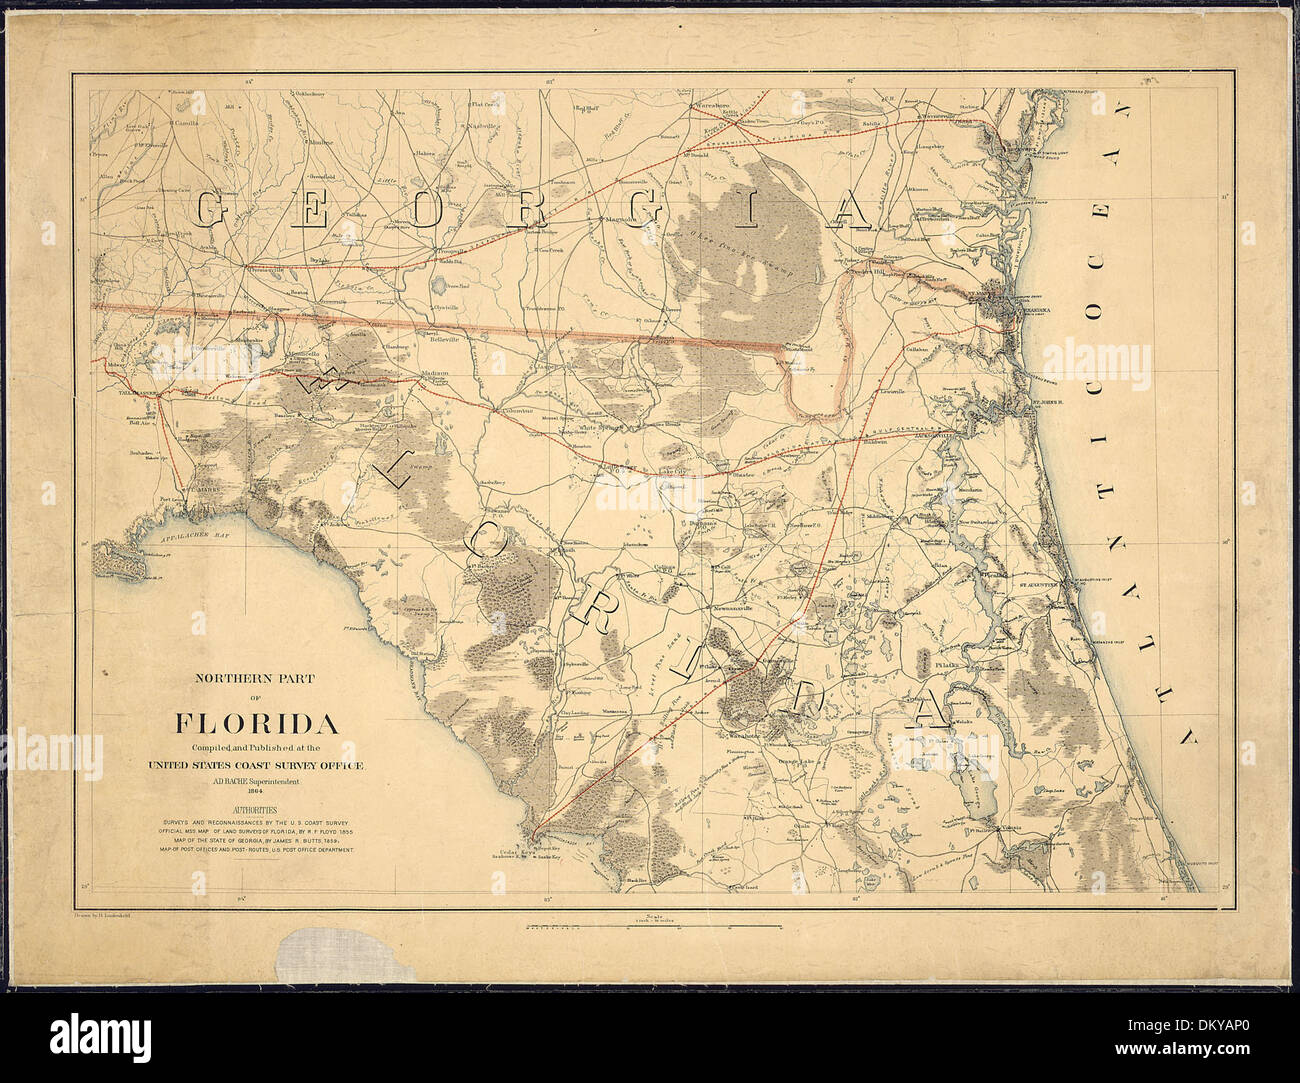 Nördlichen Teil von Florida. Zusammengestellt und veröffentlicht in der United States Coast Survey Office, A. D. Bache... 305412 Stockfoto